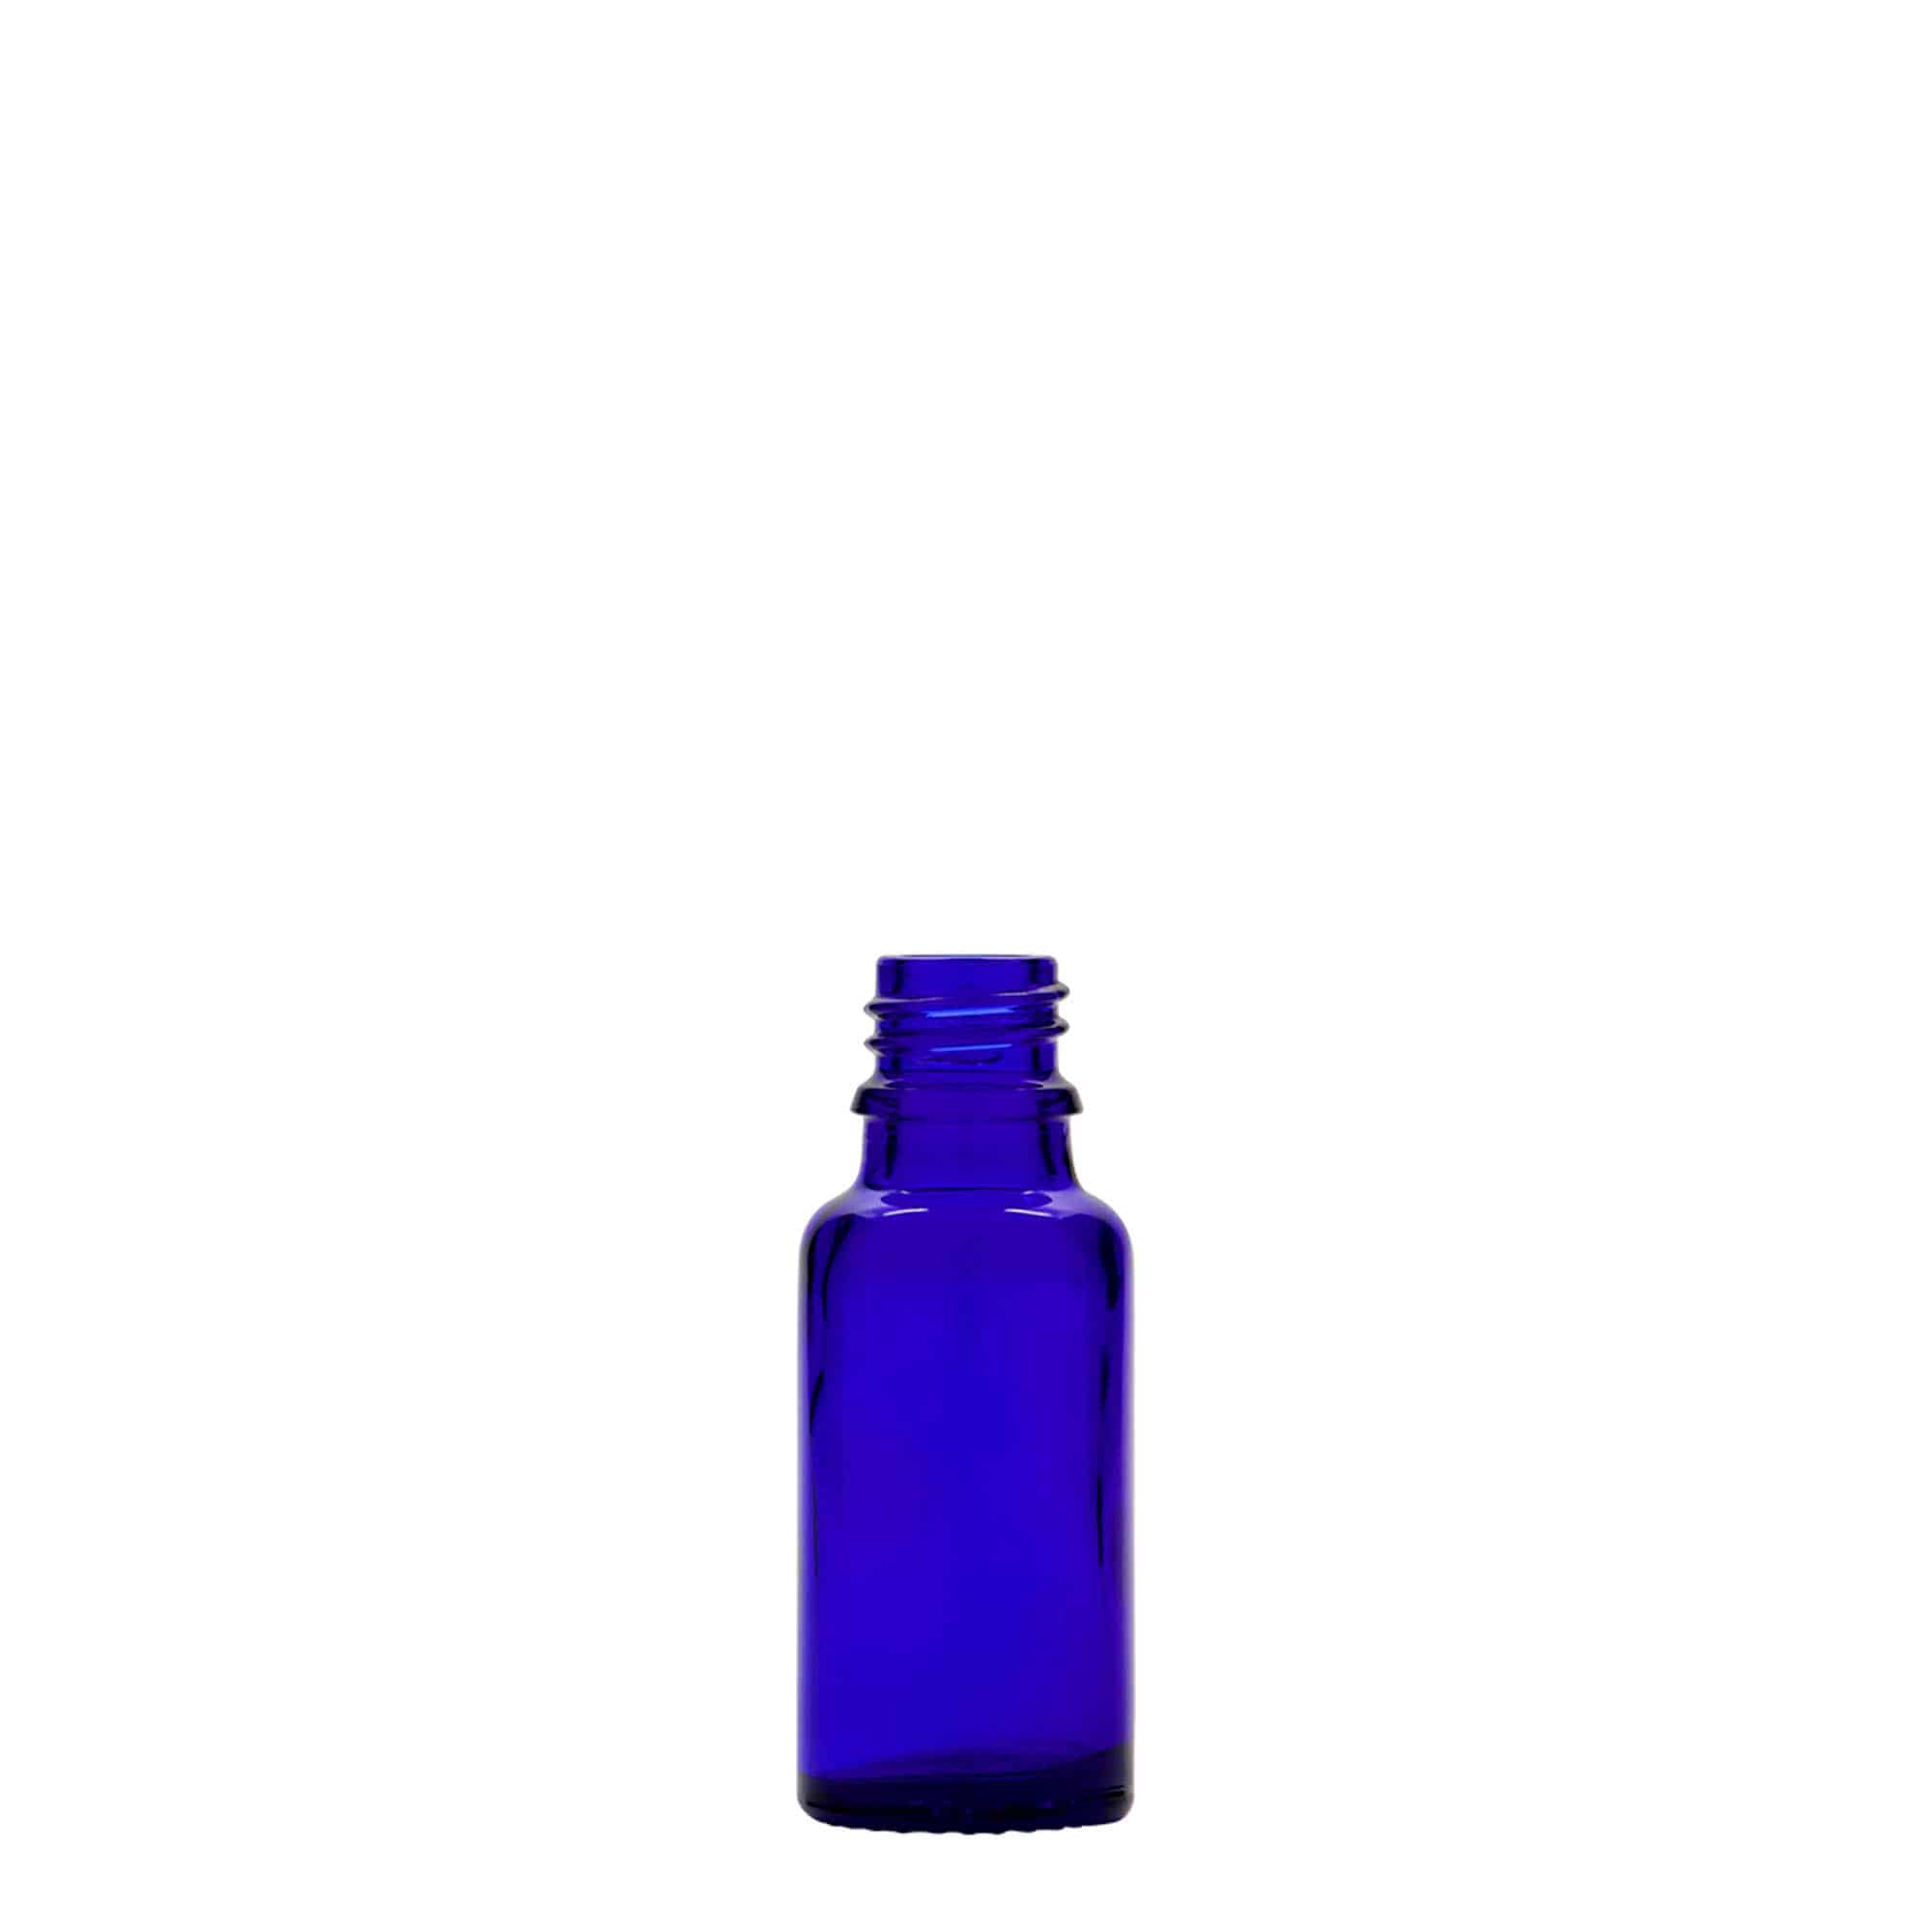 20 ml butelka farmaceutyczna, szkło, kolor błękit królewski, zamknięcie: DIN 18